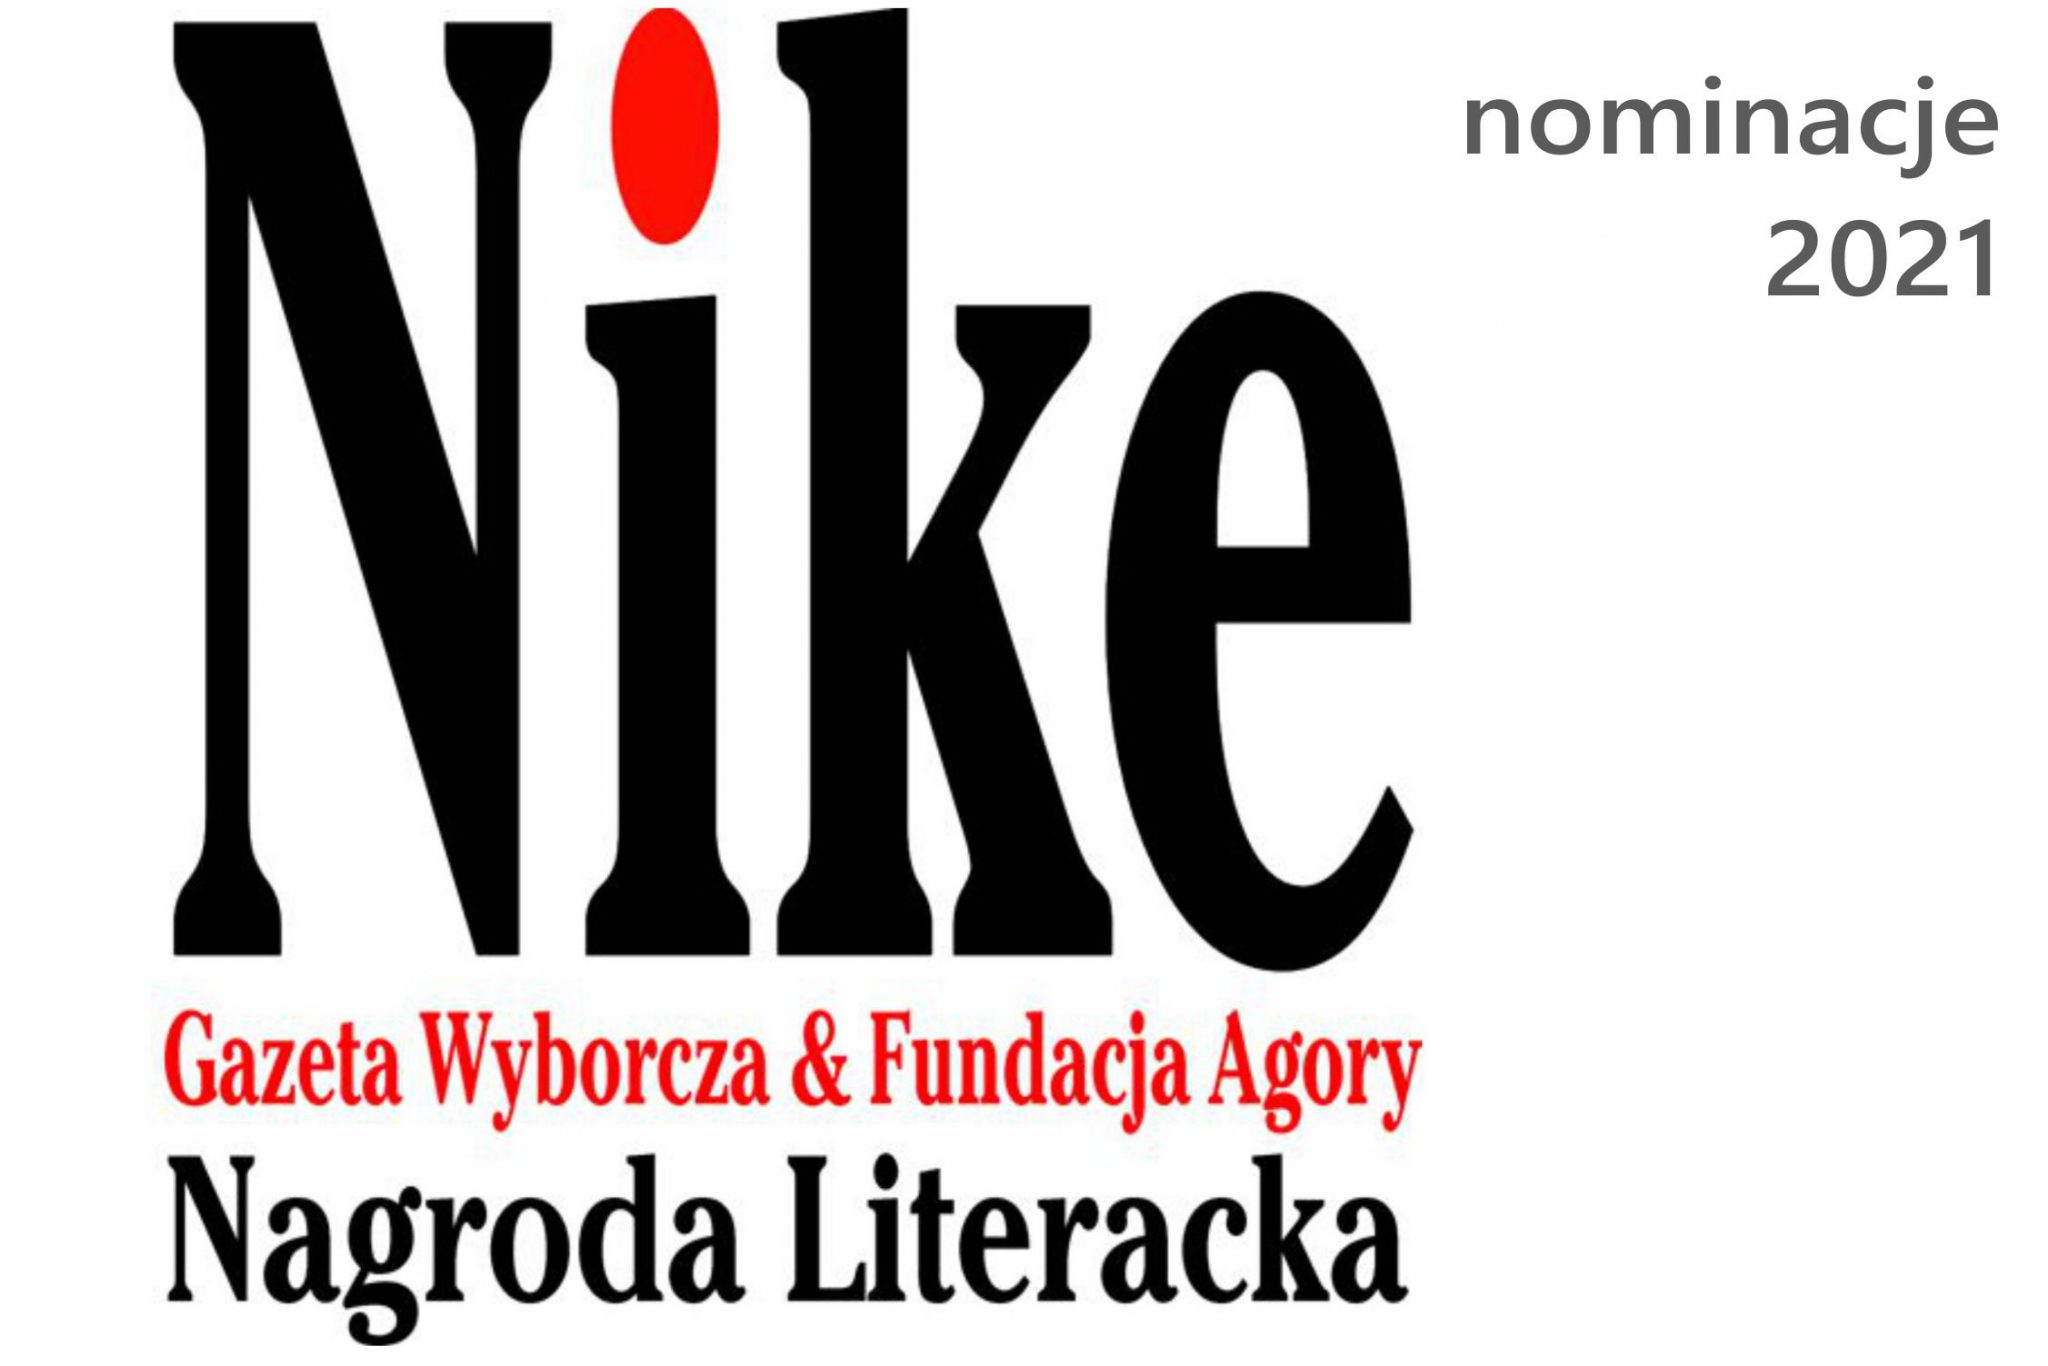 Nike Gazeta Wyborcza & Fundacja Agory Nagroda Literacka; nominacje 2021